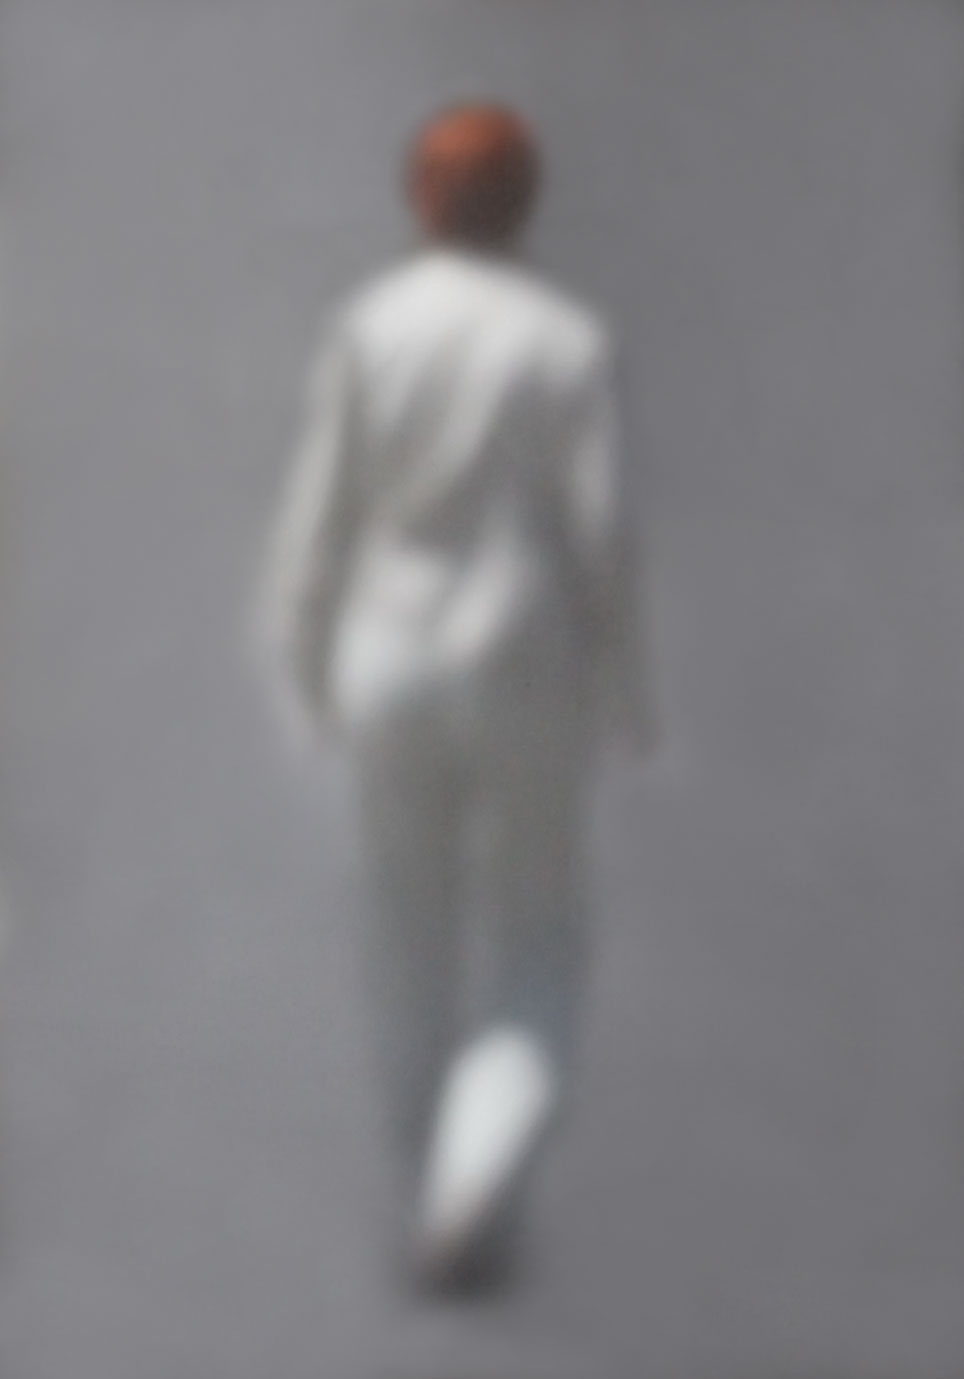 32 „Weißer Anzug-Rote Haare“, 2012, New York, Camera Obscura, Pigmentdruck auf Alu-Dibond